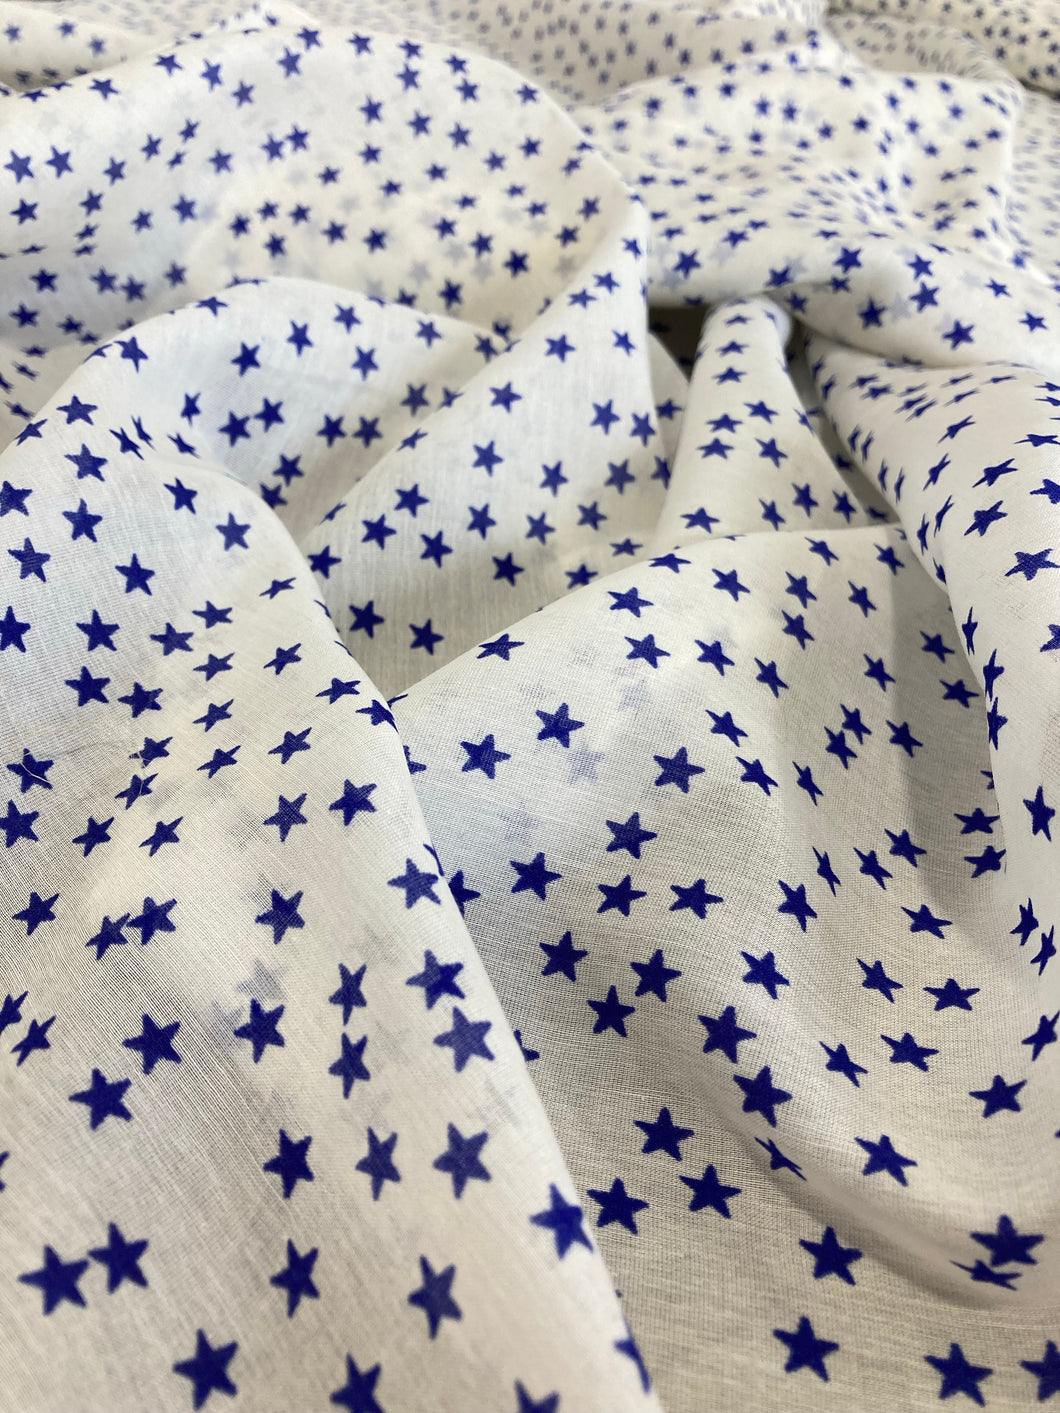 Cotone bianco con stelle blu: 15€/m